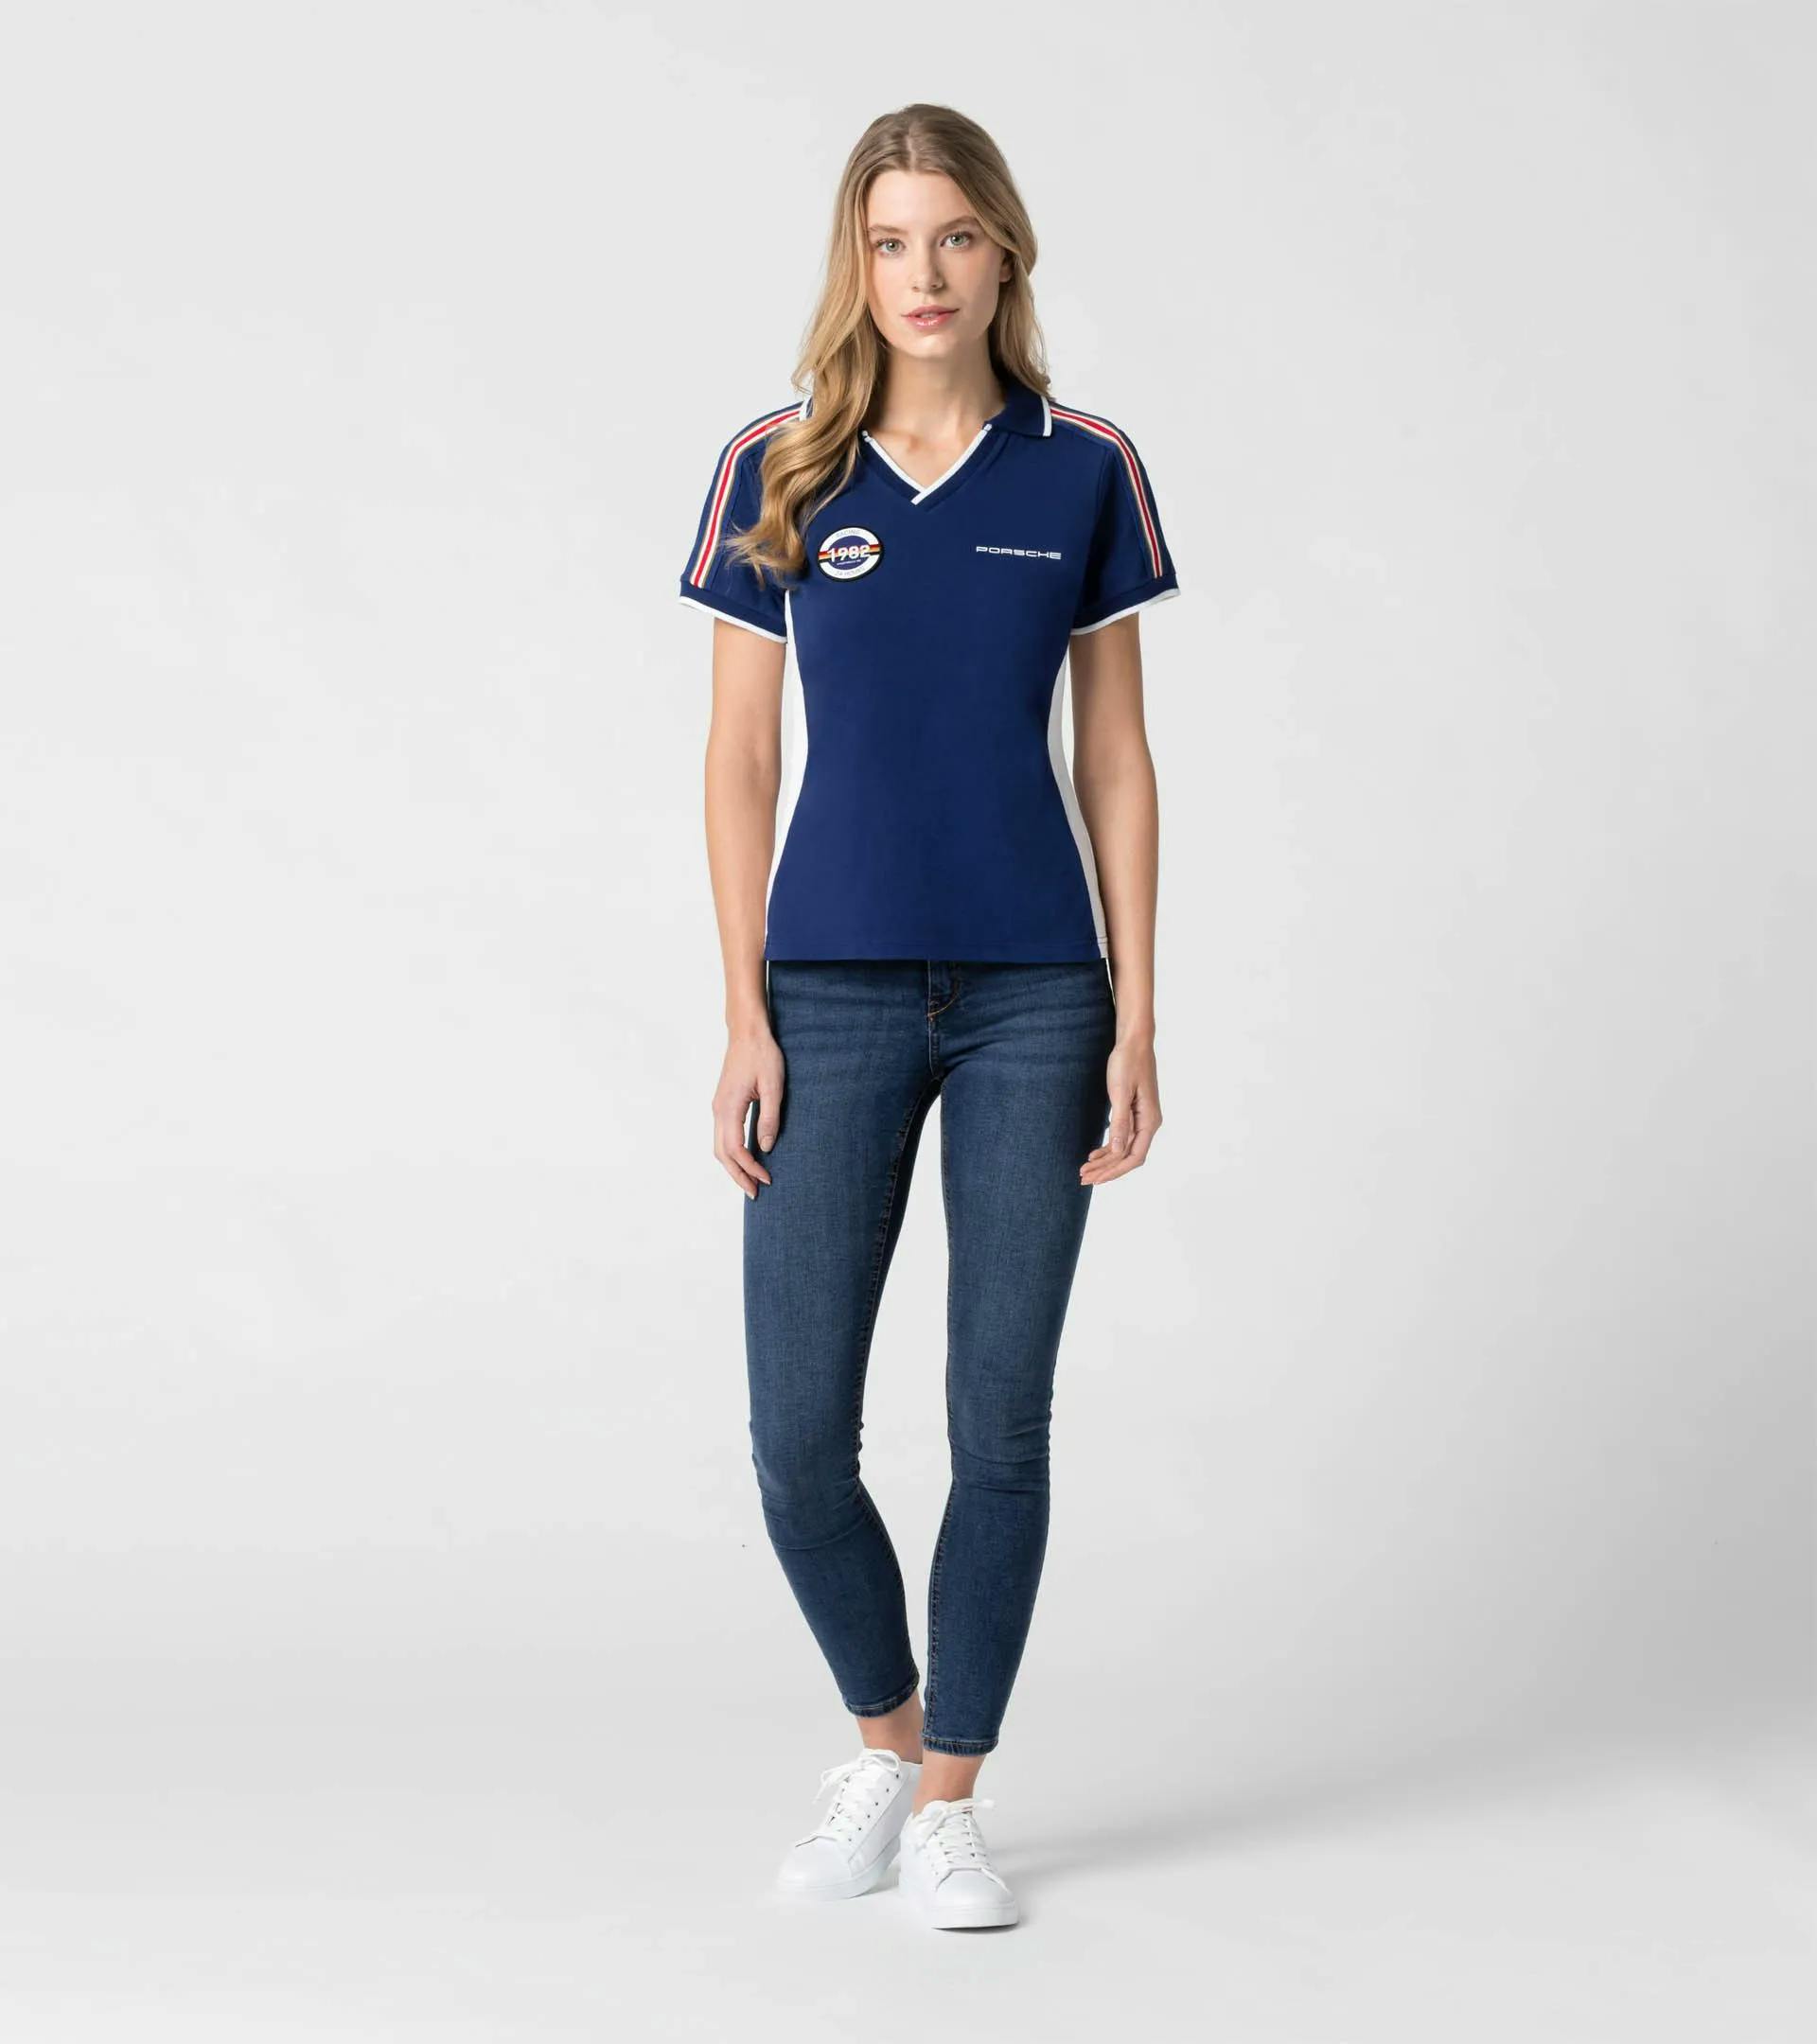 Women's polo shirt – Racing 6